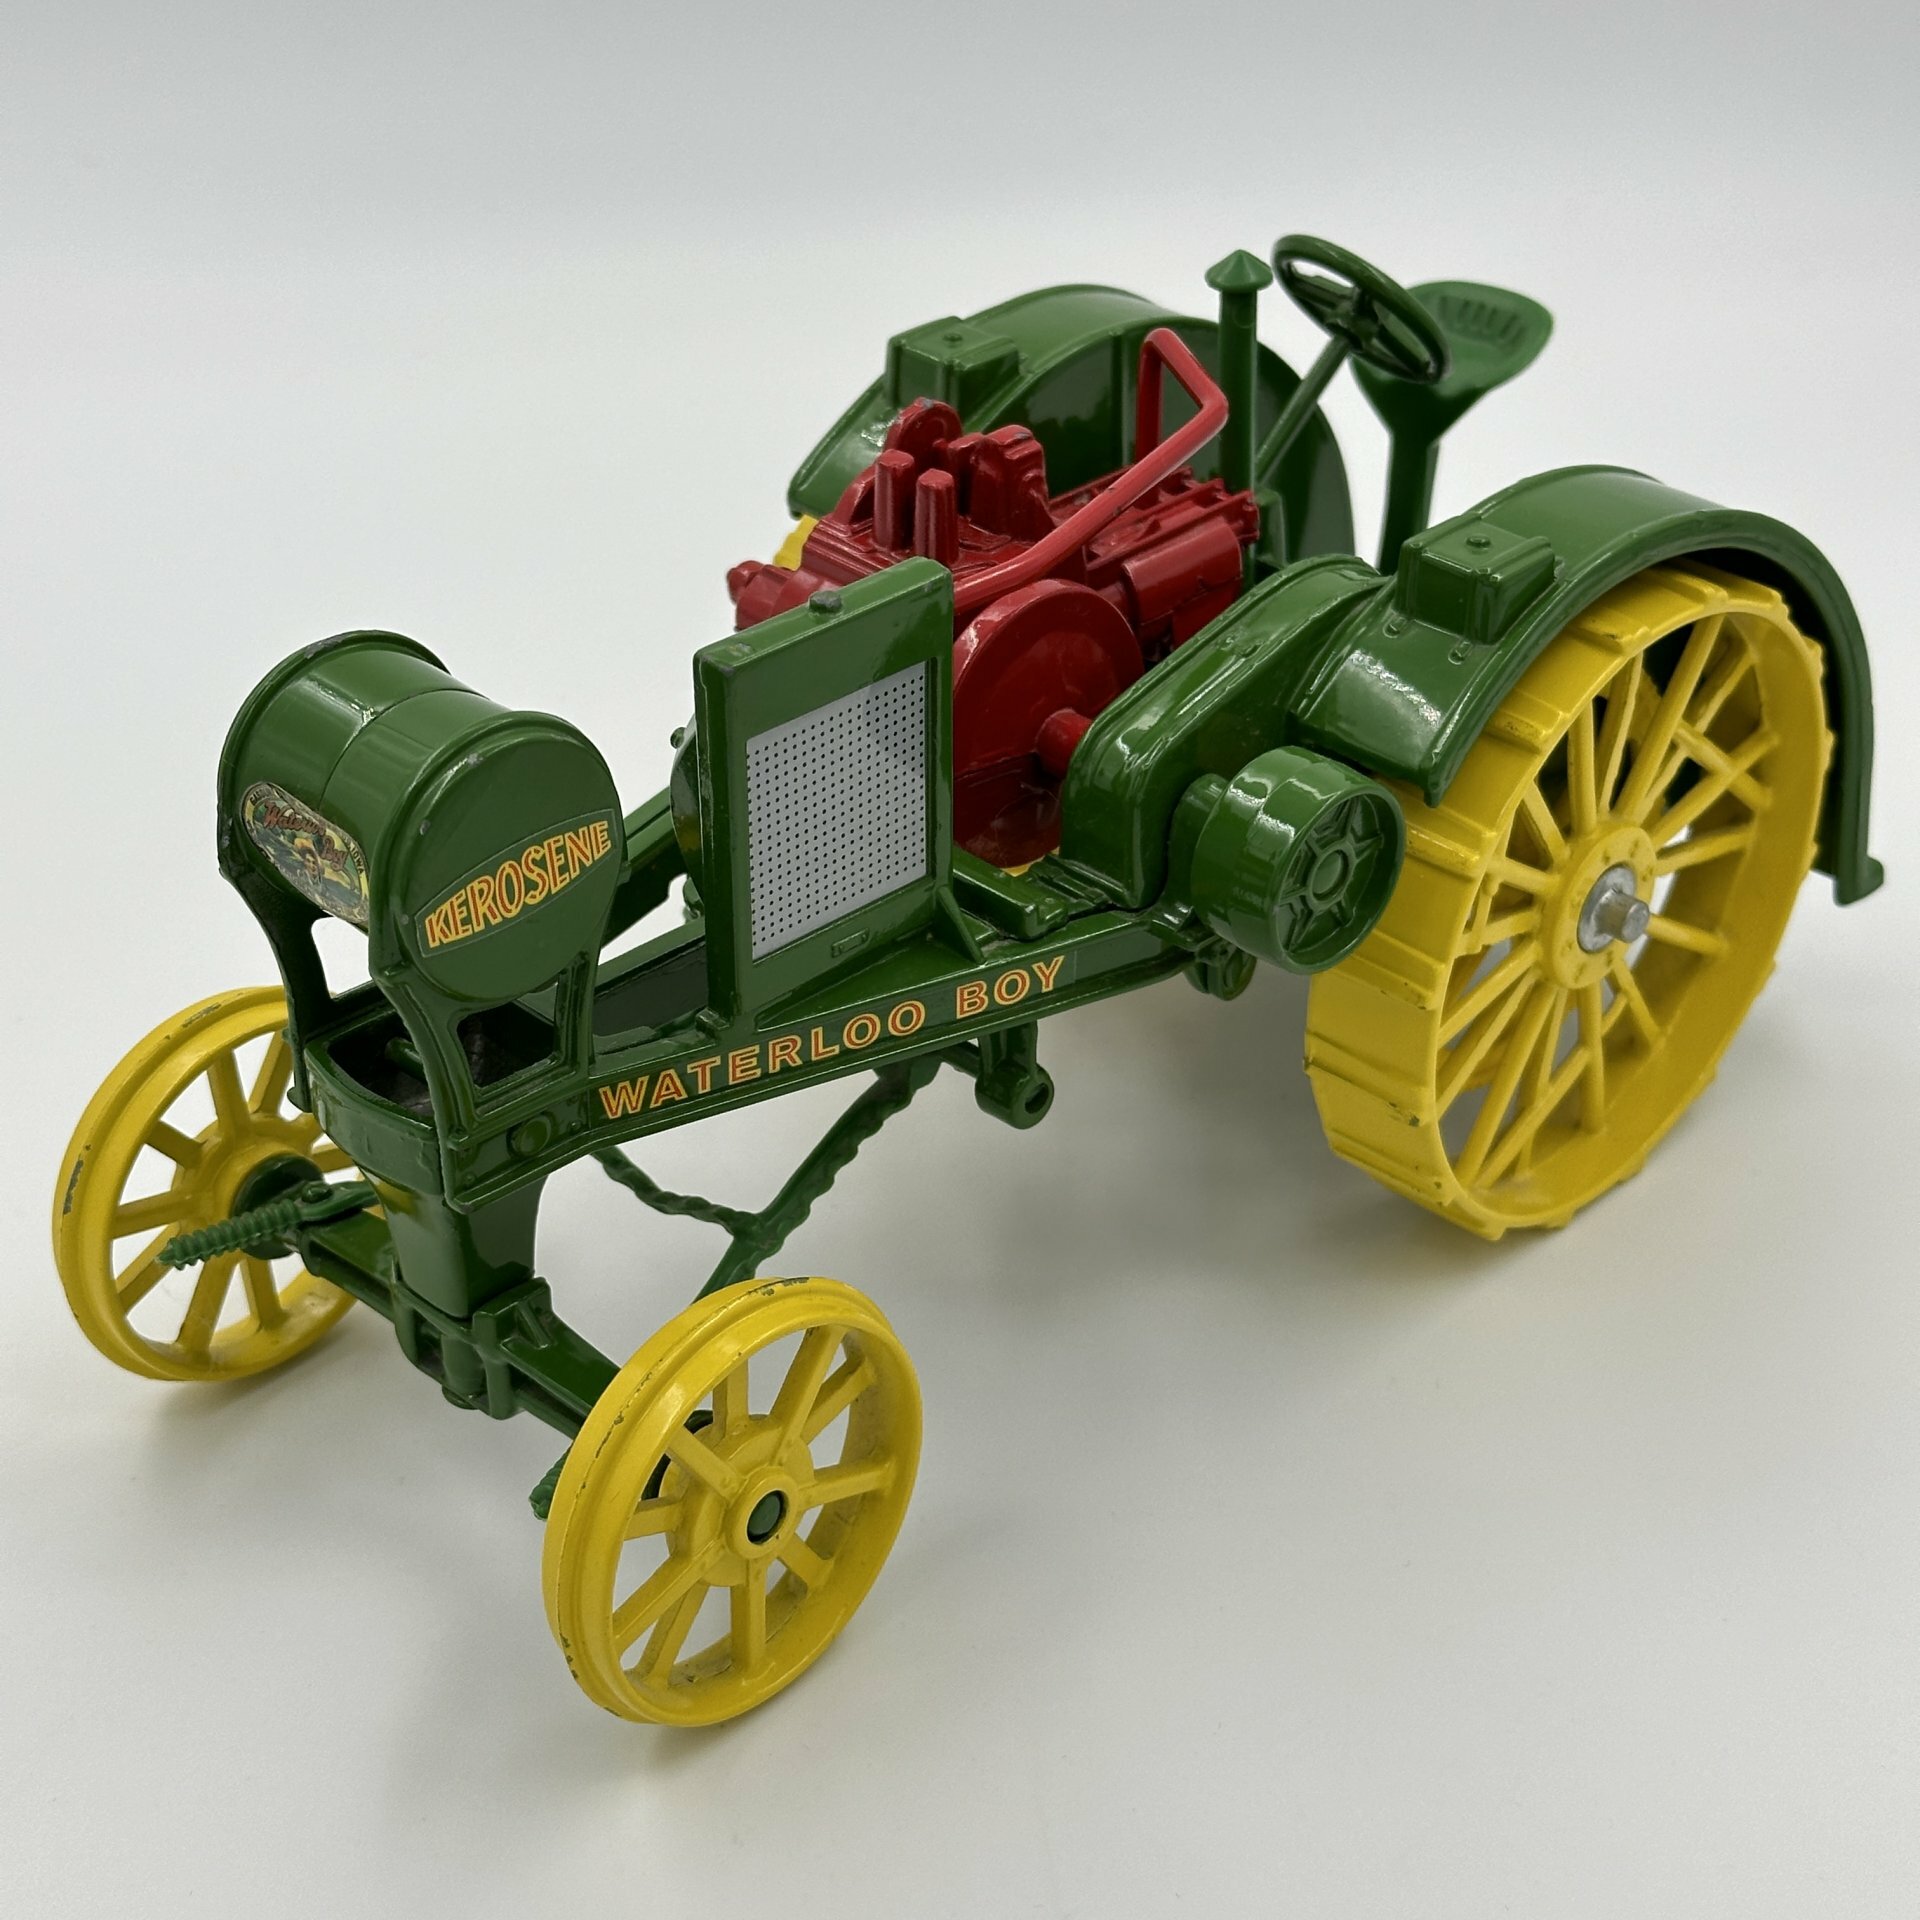 Игрушка в виде модели сельскохозяйственной машины John Deere R. Waterloo Boy 1915 года, металл